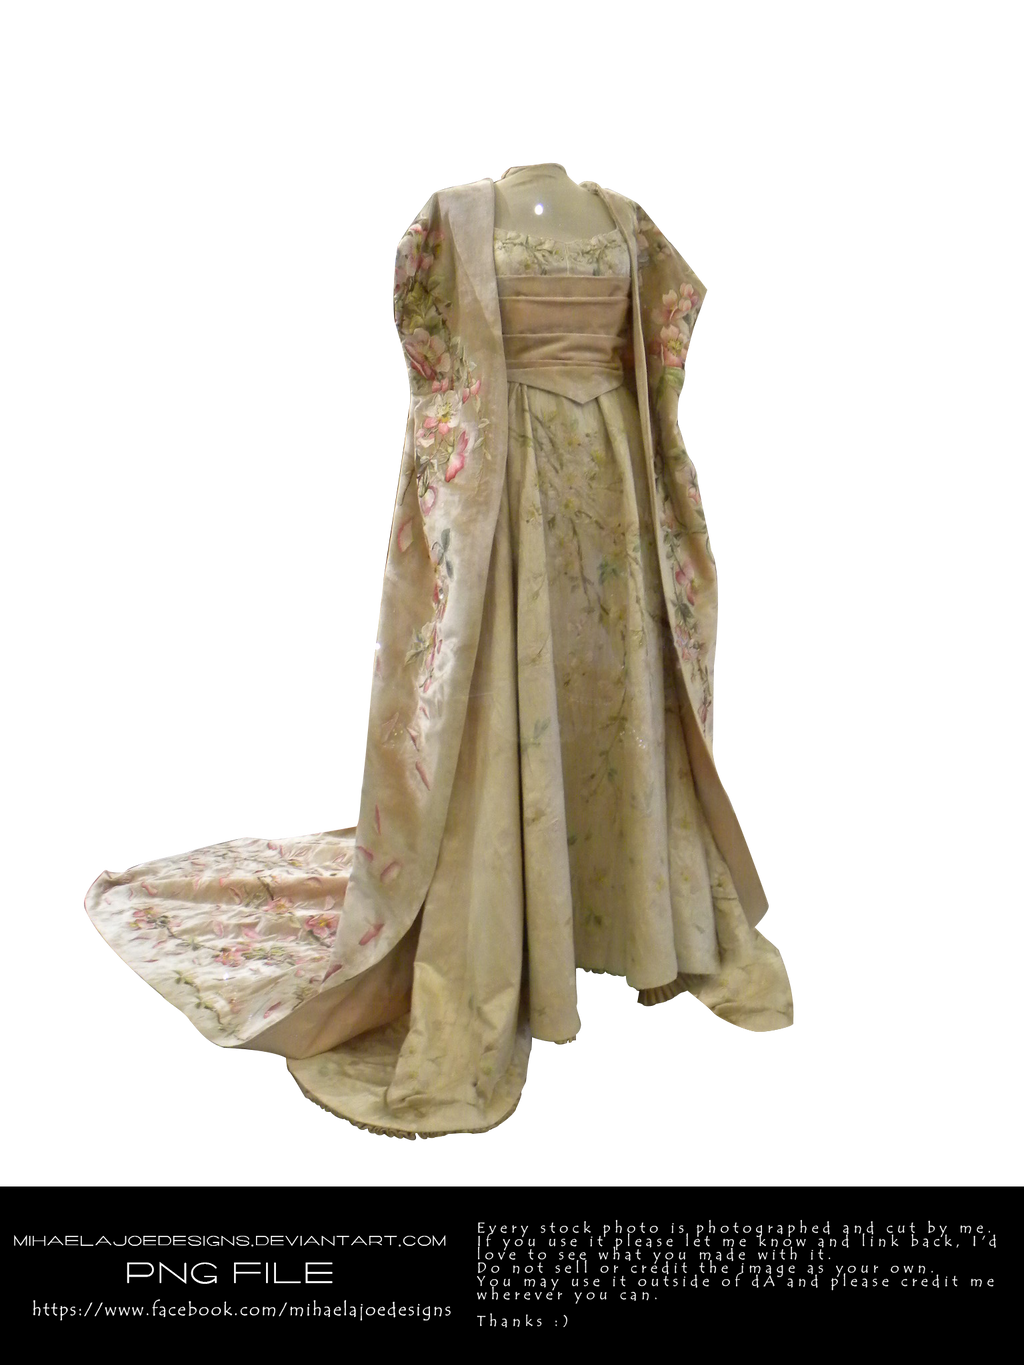 victorian-dress-mihaelajoedesigns-by-mihaelajoedesigns-on-deviantart